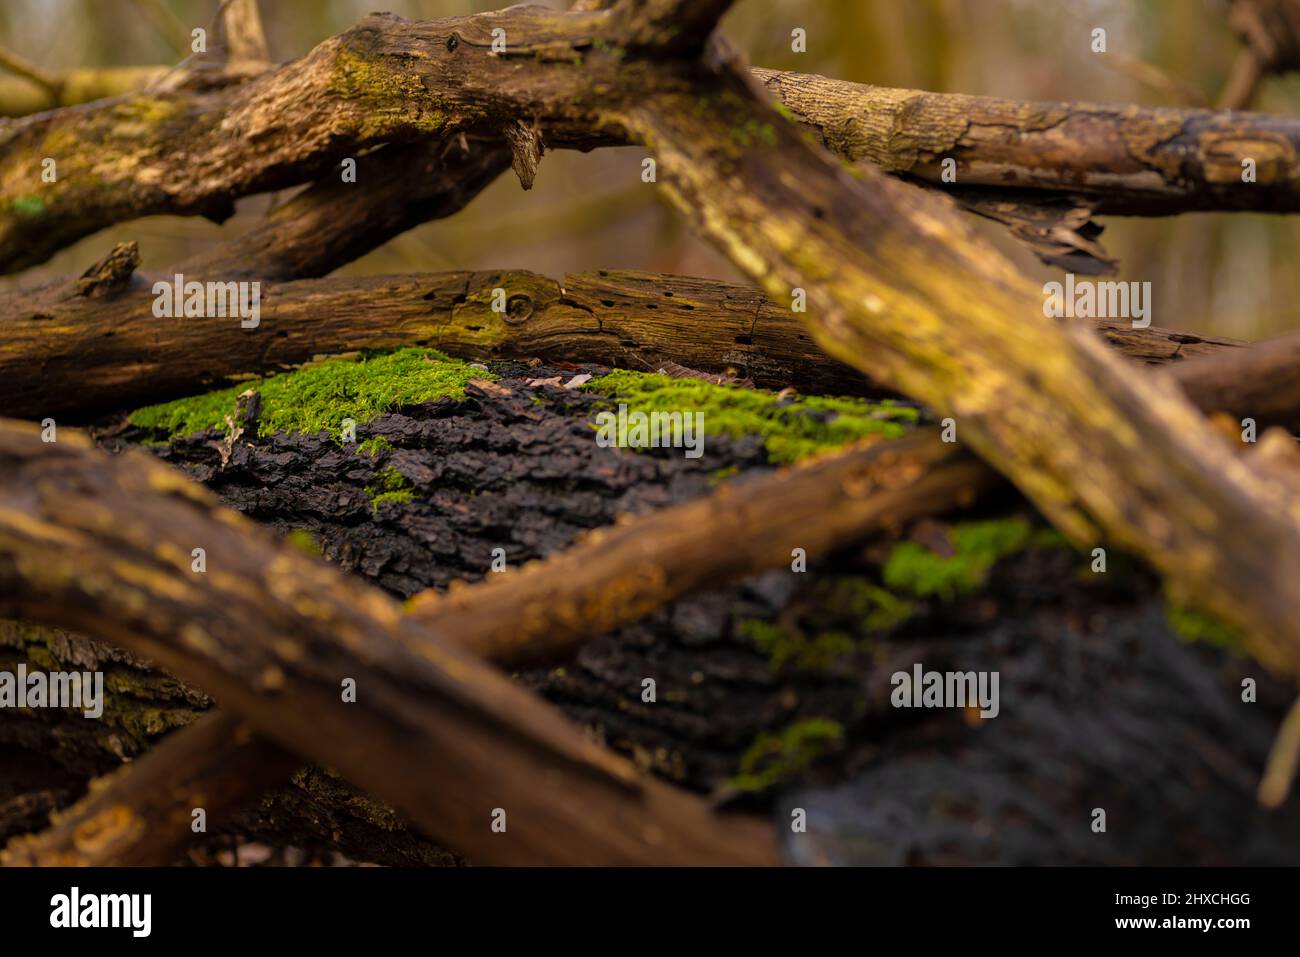 Legno morto su un tronco di quercia sdraiato sopraffolto di muschio, profondità di campo molto bassa, bokeh bello morbido e blurry Foto Stock